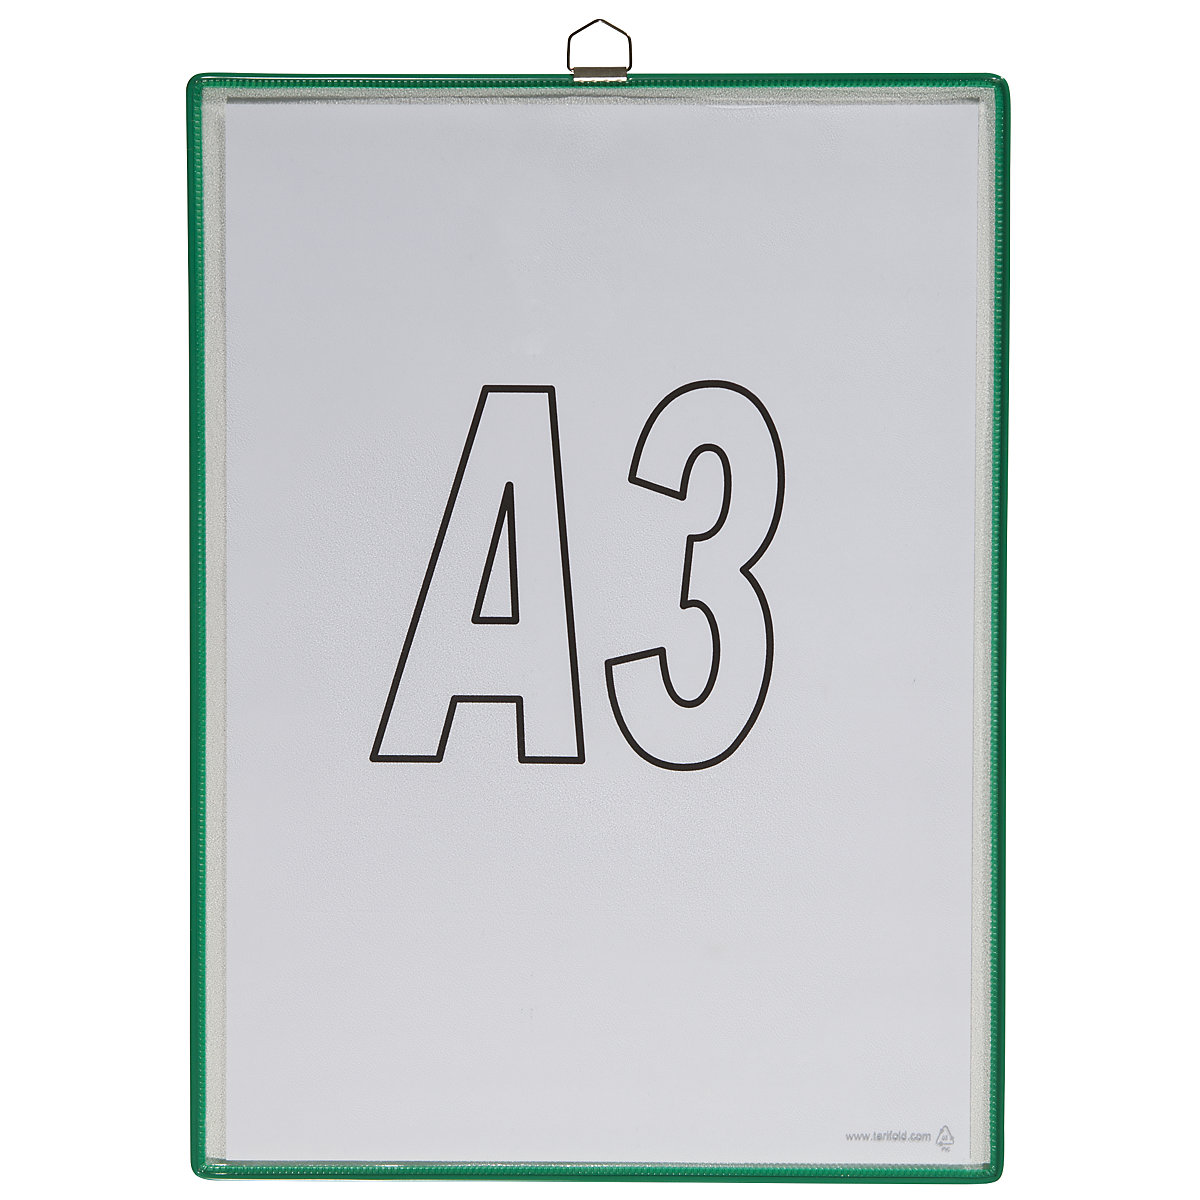 Závěsná průhledná kapsa – Tarifold, pro formát DIN A3, zelená, bal.j. 10 ks-3